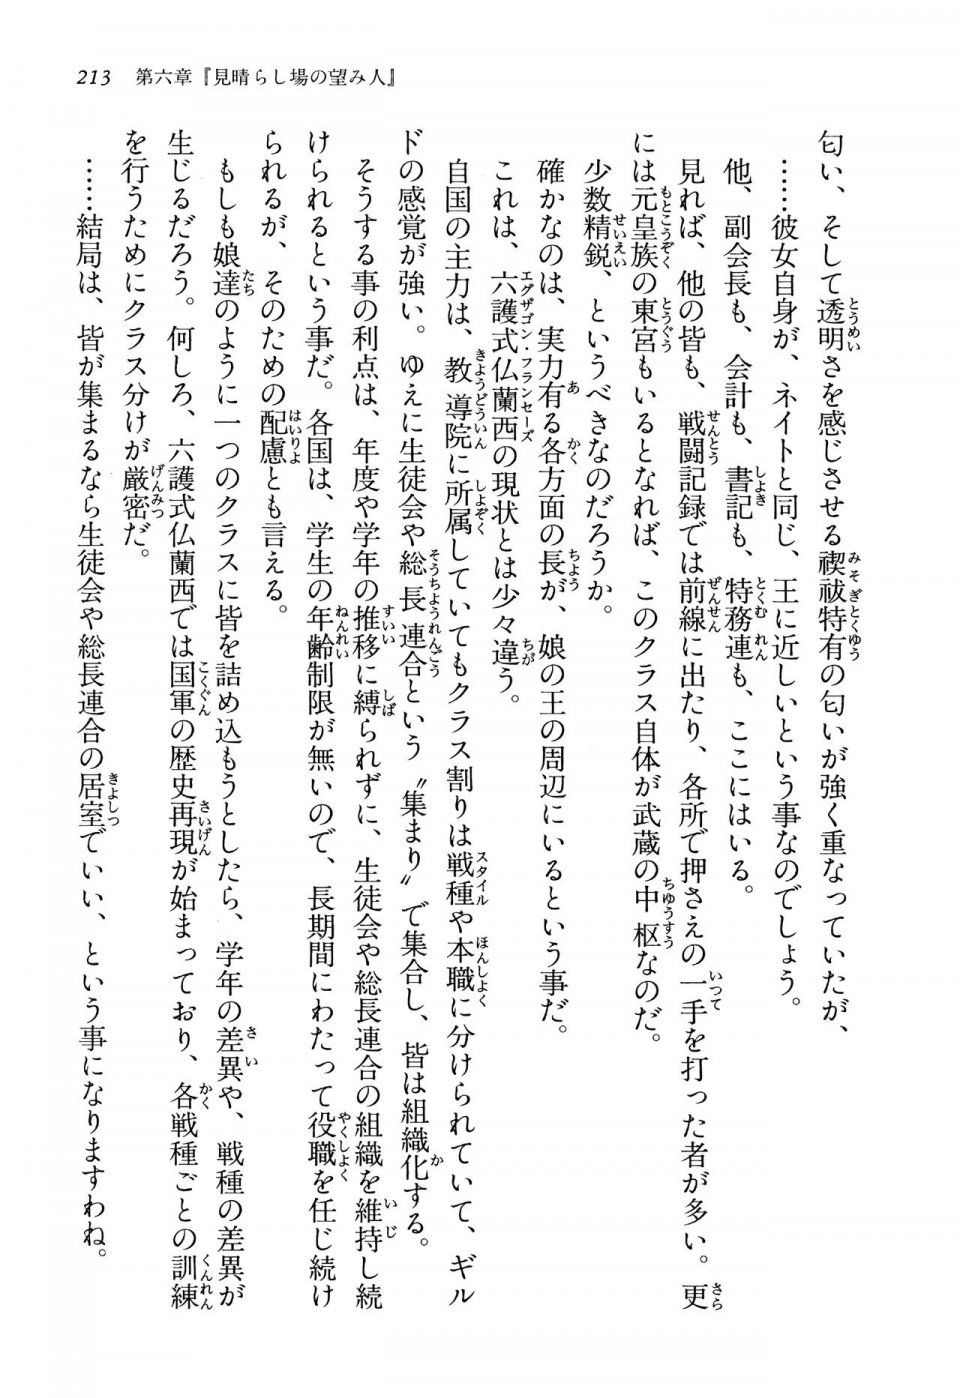 Kyoukai Senjou no Horizon LN Vol 13(6A) - Photo #213